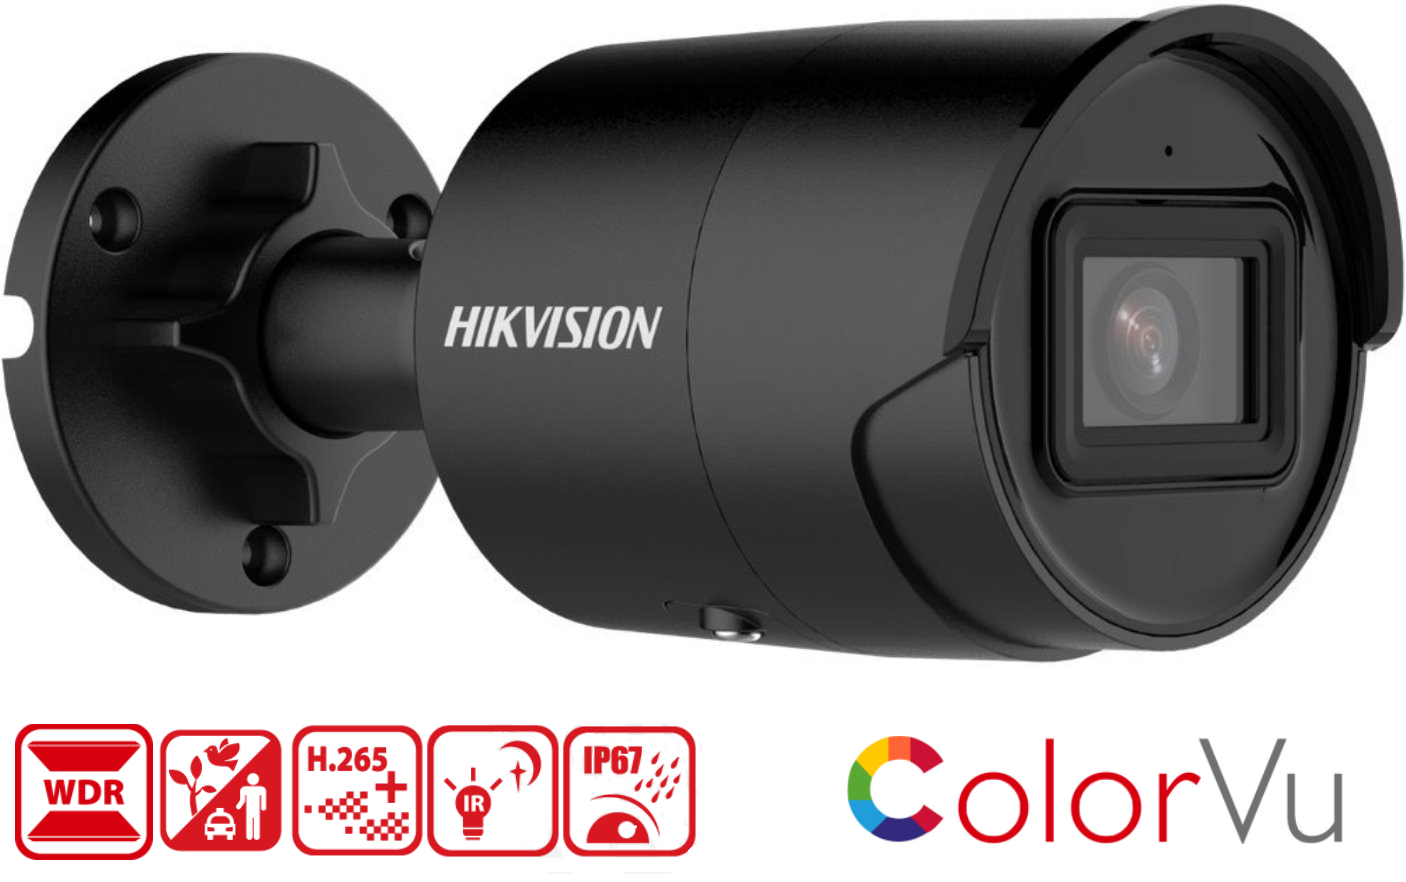 Kamera Hikvision DS-2CD2046G2-IU má rozlíšenie 2688 x 1520px pri 25 fps, krytie IP67, 120dB WDR snímač DarkFighter, micro SD slot na 256GB kartu, podporu kodeku H.265, farebné nočné videnie ColorVu a algoritmus hlbokého učenie AcuSense 2.0 pre chytrú detekciu pohybu.